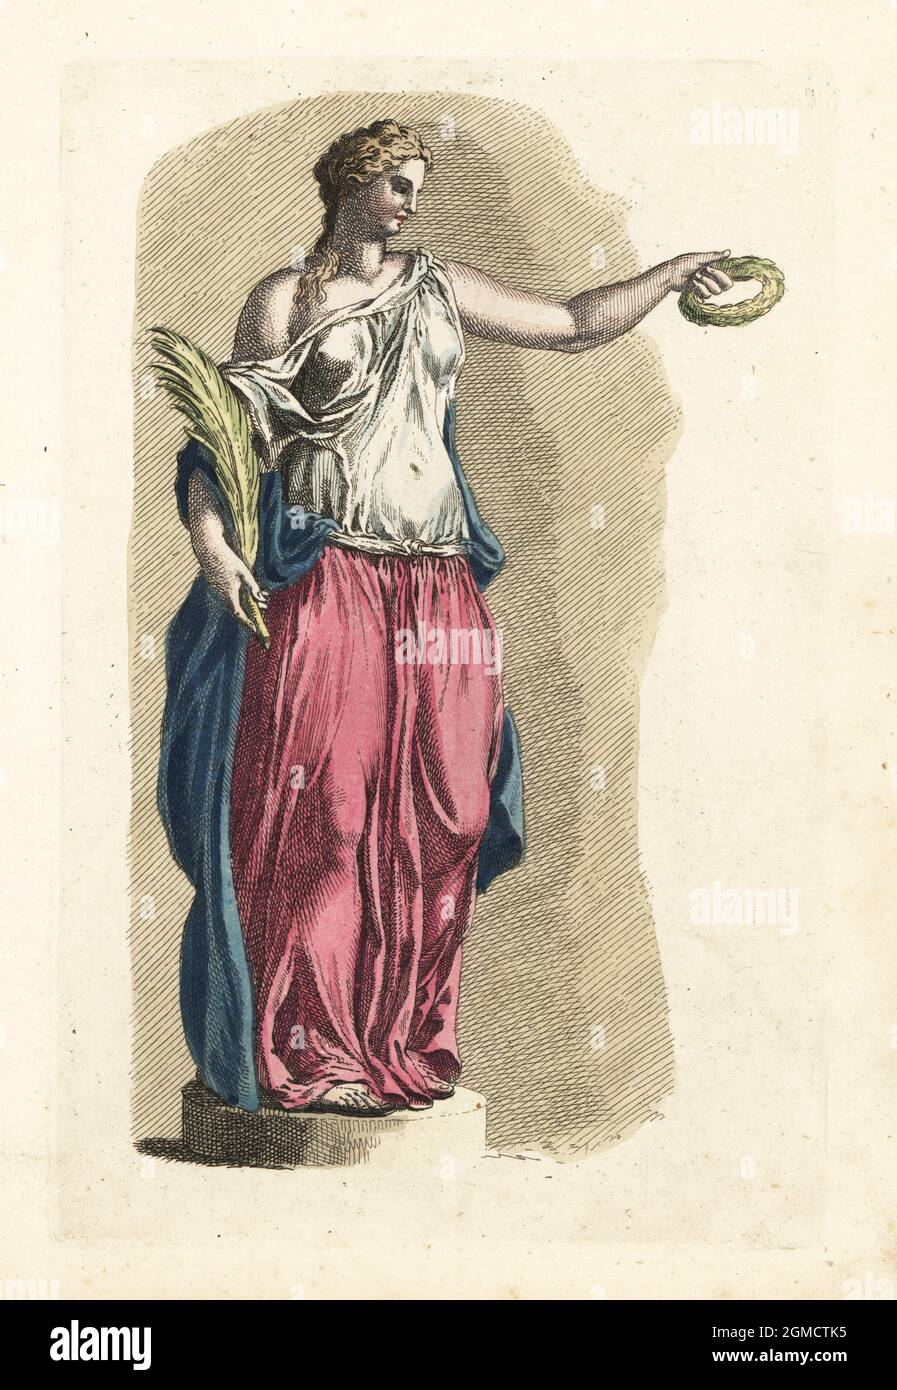 Figura de Ceres, diosa romana de la agricultura, el grano, y la fertilidad, sosteniendo una corona y el trigo. De una antigua estatua romana. Grabado de copperplate a mano de The Artist’s Vade Mecum, de Robert Sayer, Siendo todo el arte del dibujo, Londres, 1766. Foto de stock